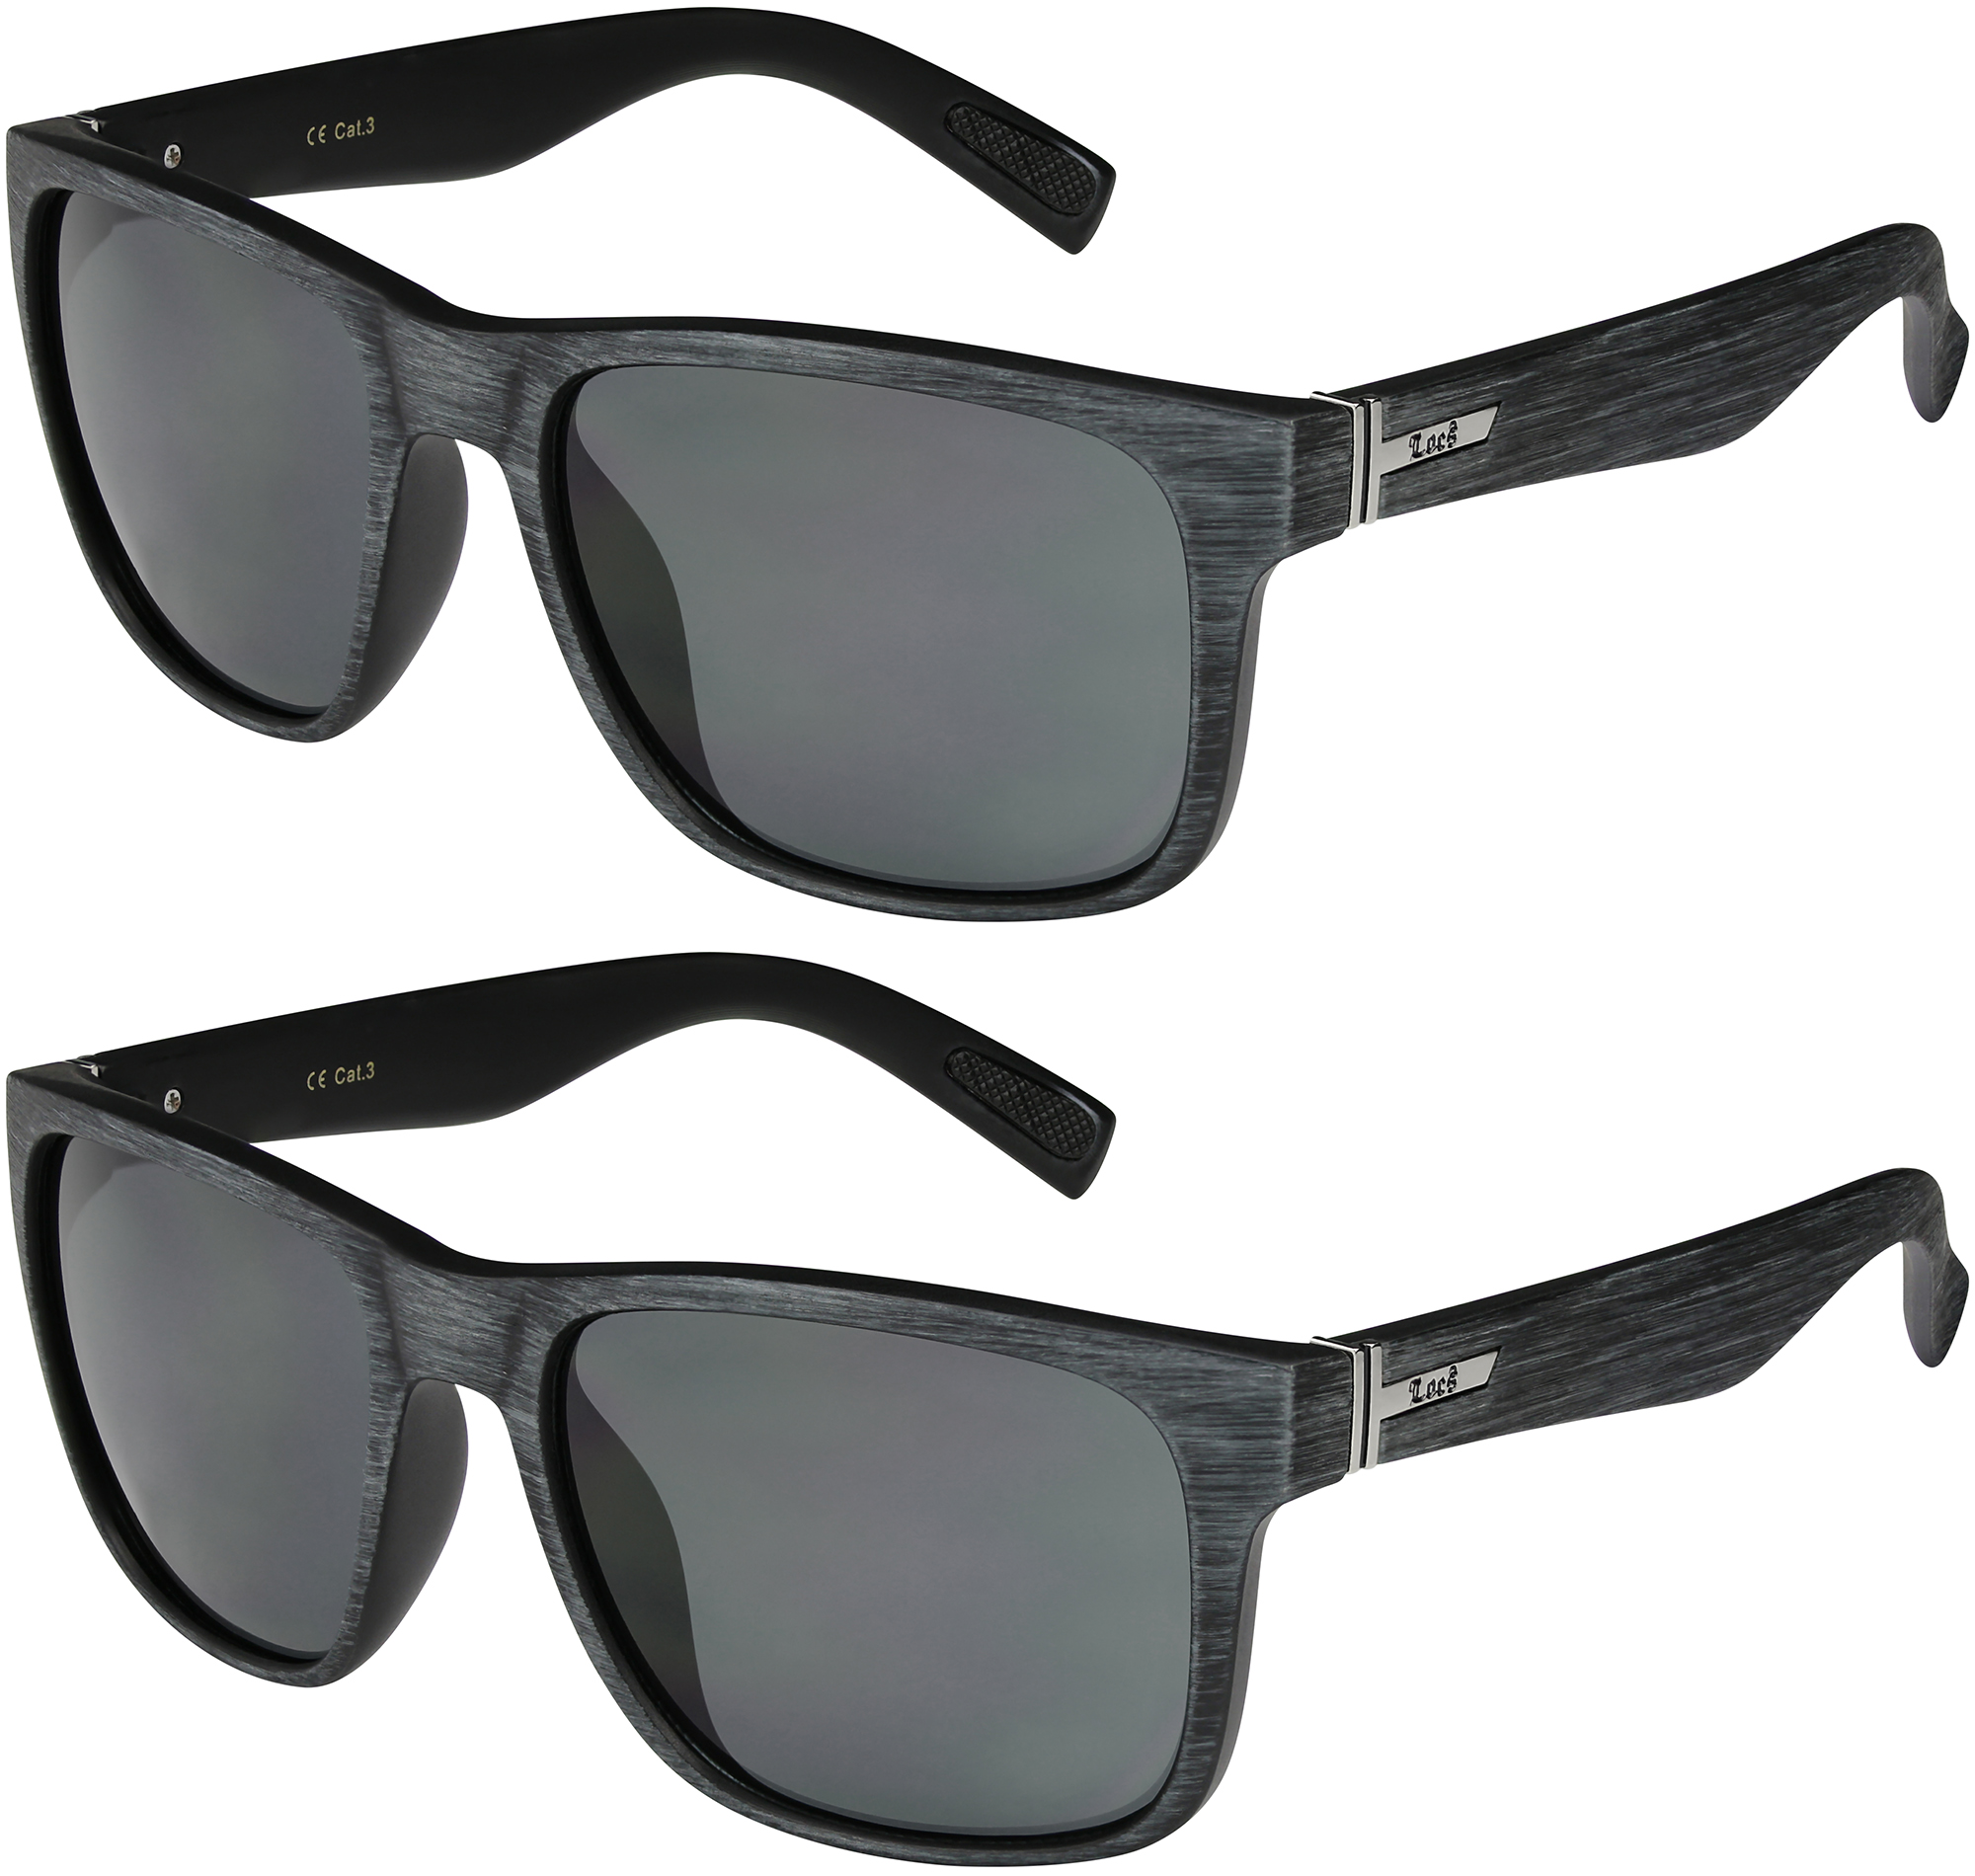 2er Pack Locs 91070 Choppers Sport Brille Sonnenbrille Männer Damen schwarz matt